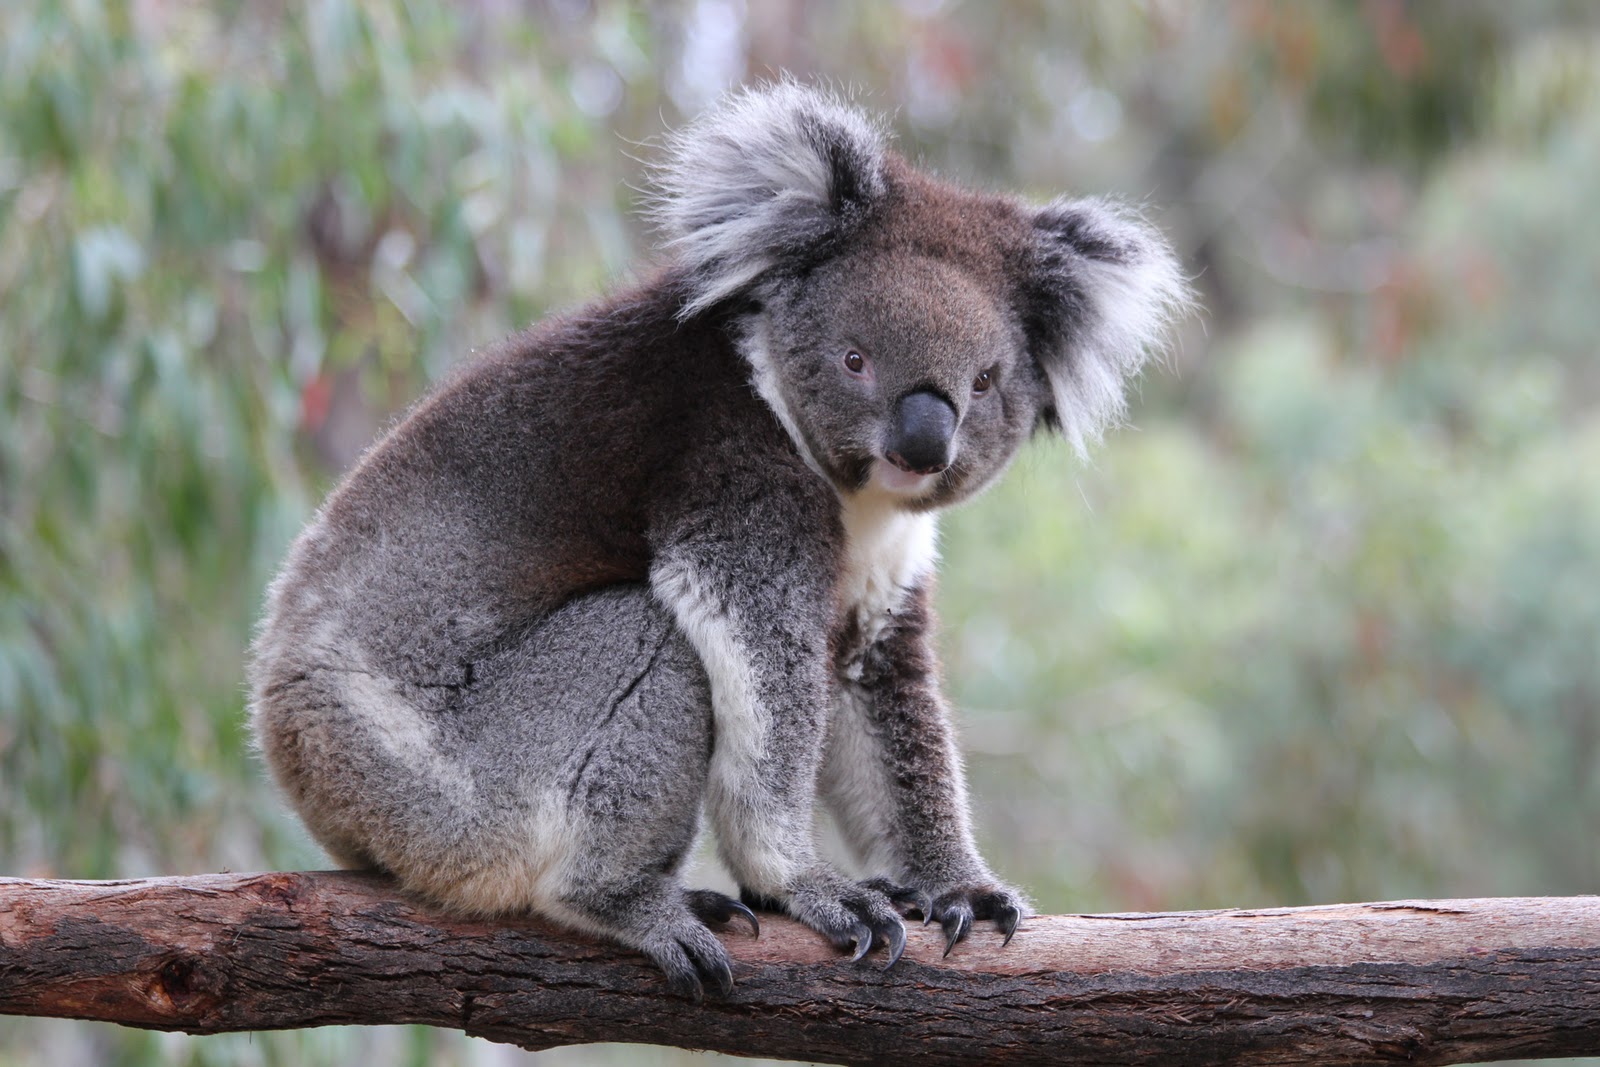 Koala or marsupial bear